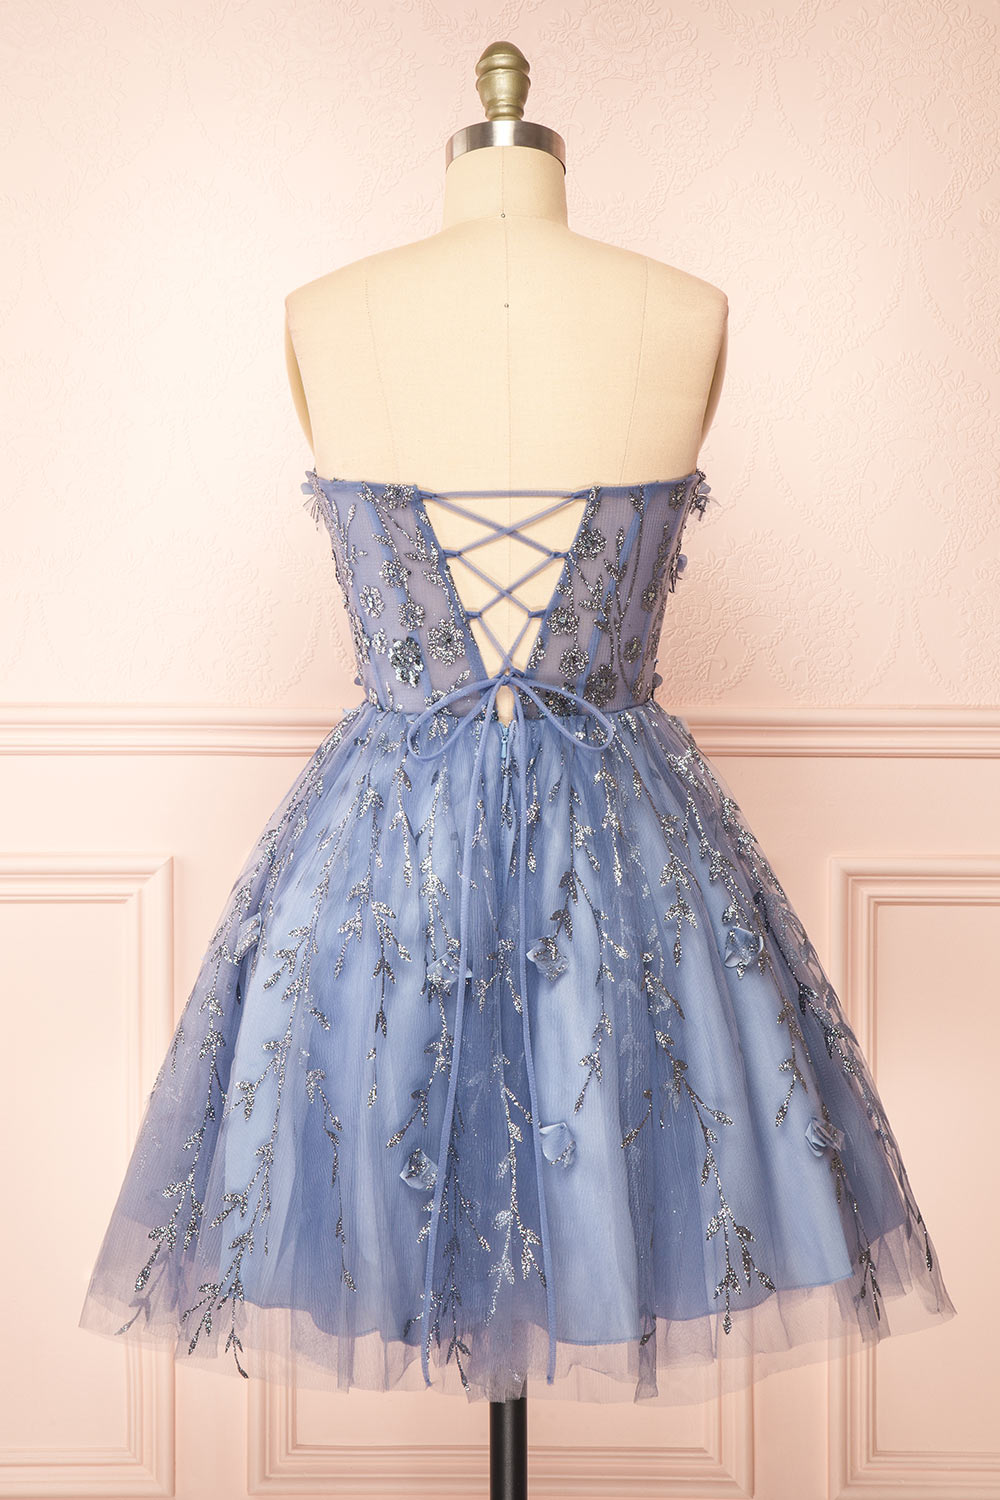 Eudora Short Sparkling Blue Dress w/ Floral Appliqués | Boutique 1861 back view